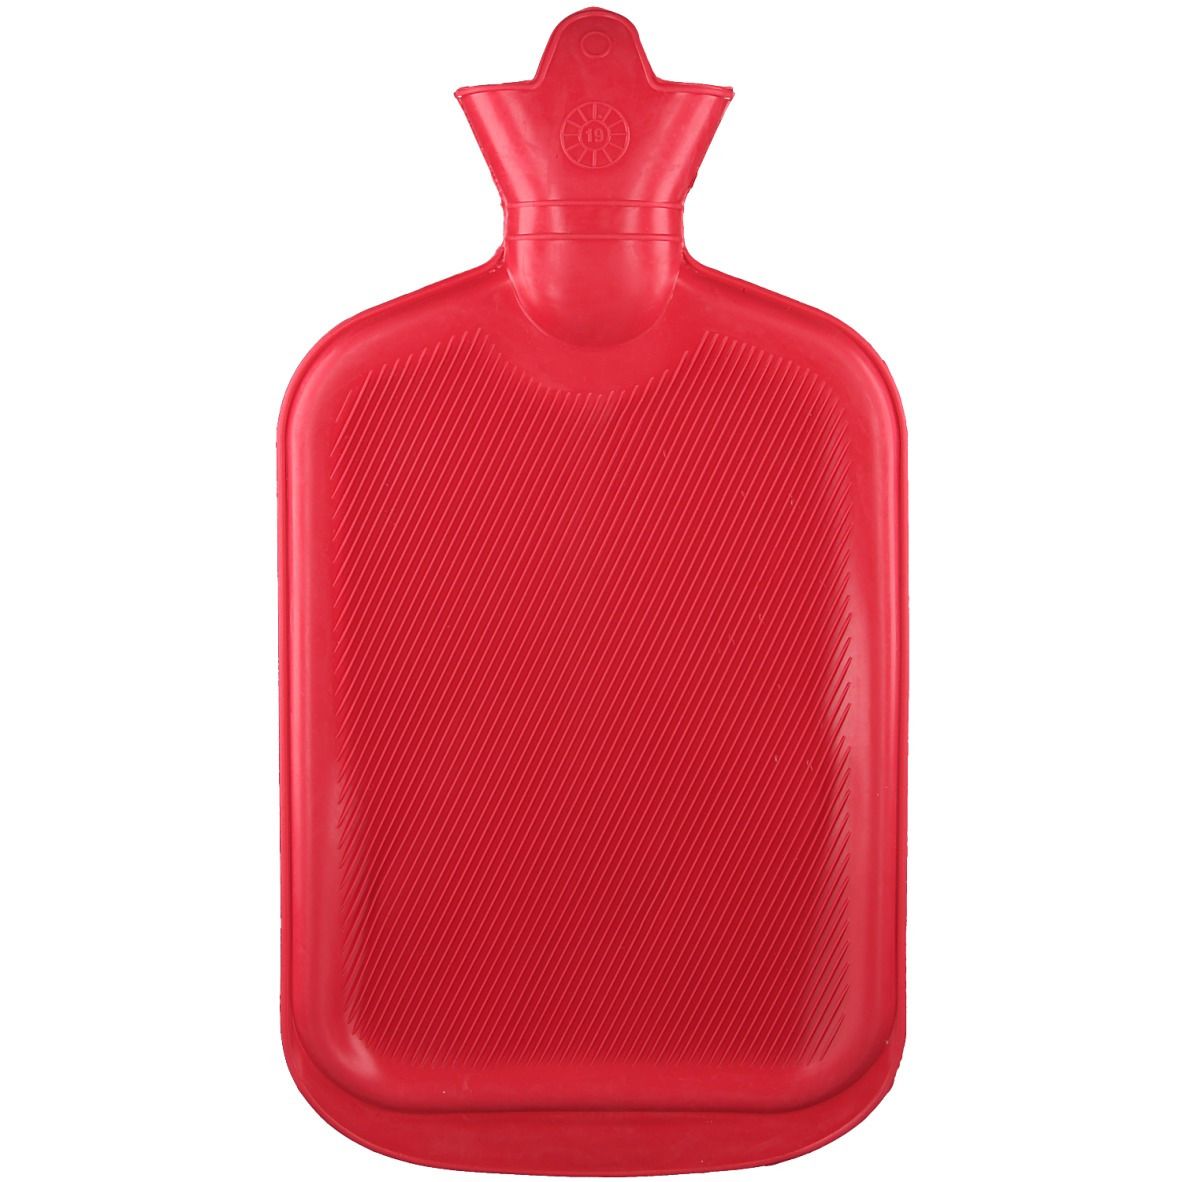 Wärmeflasche aus Gummi 2 L